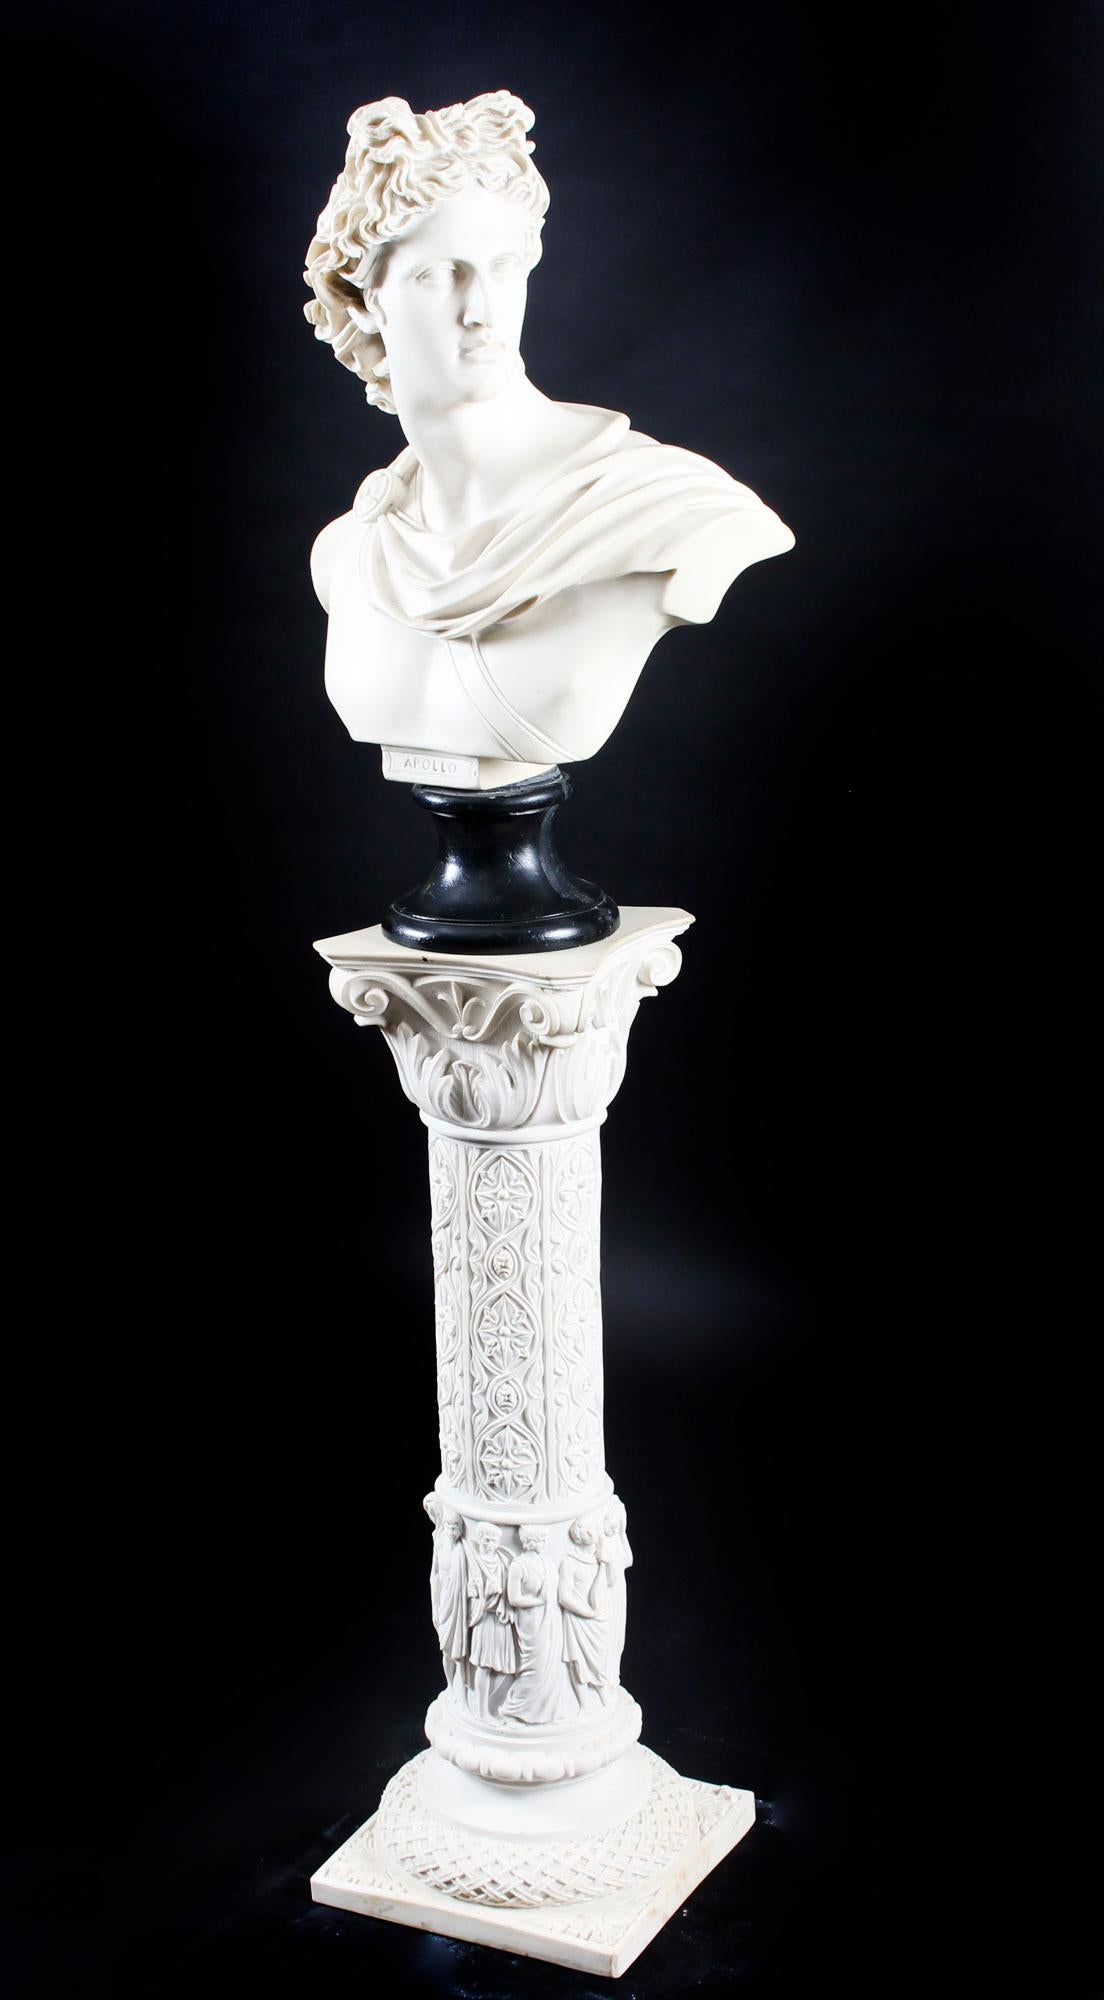 Un buste en marbre magnifiquement sculpté du célèbre dieu grec Apollo, sur son fabuleux piédestal décoratif d'origine, datant du milieu du 20e siècle.

L'attention portée aux détails dans l'ensemble de la pièce est inégalée et la figure est